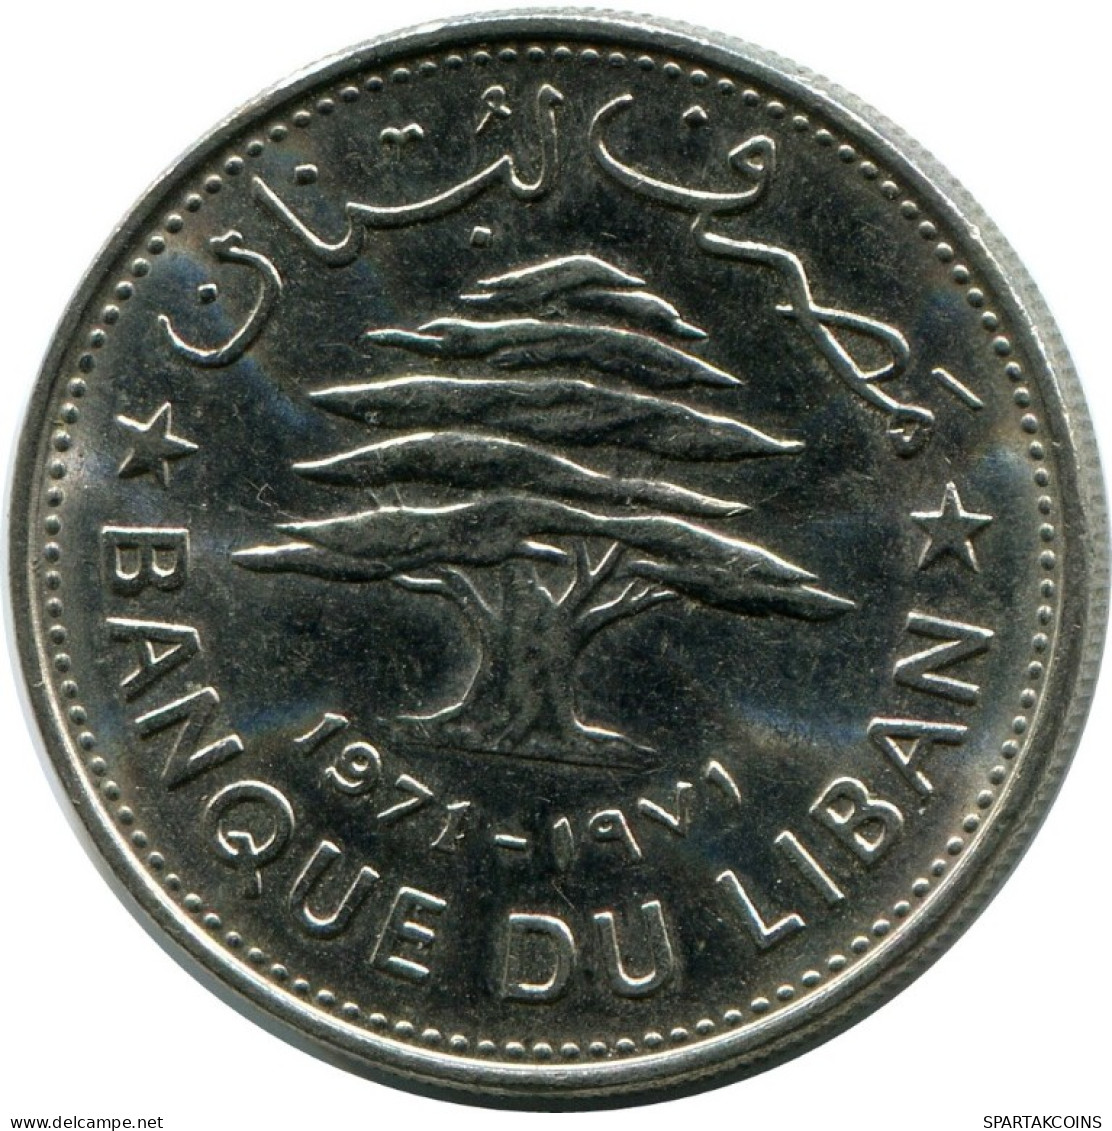 50 PIASTRES 1971 LEBANON Coin #AH803.U.A - Liban